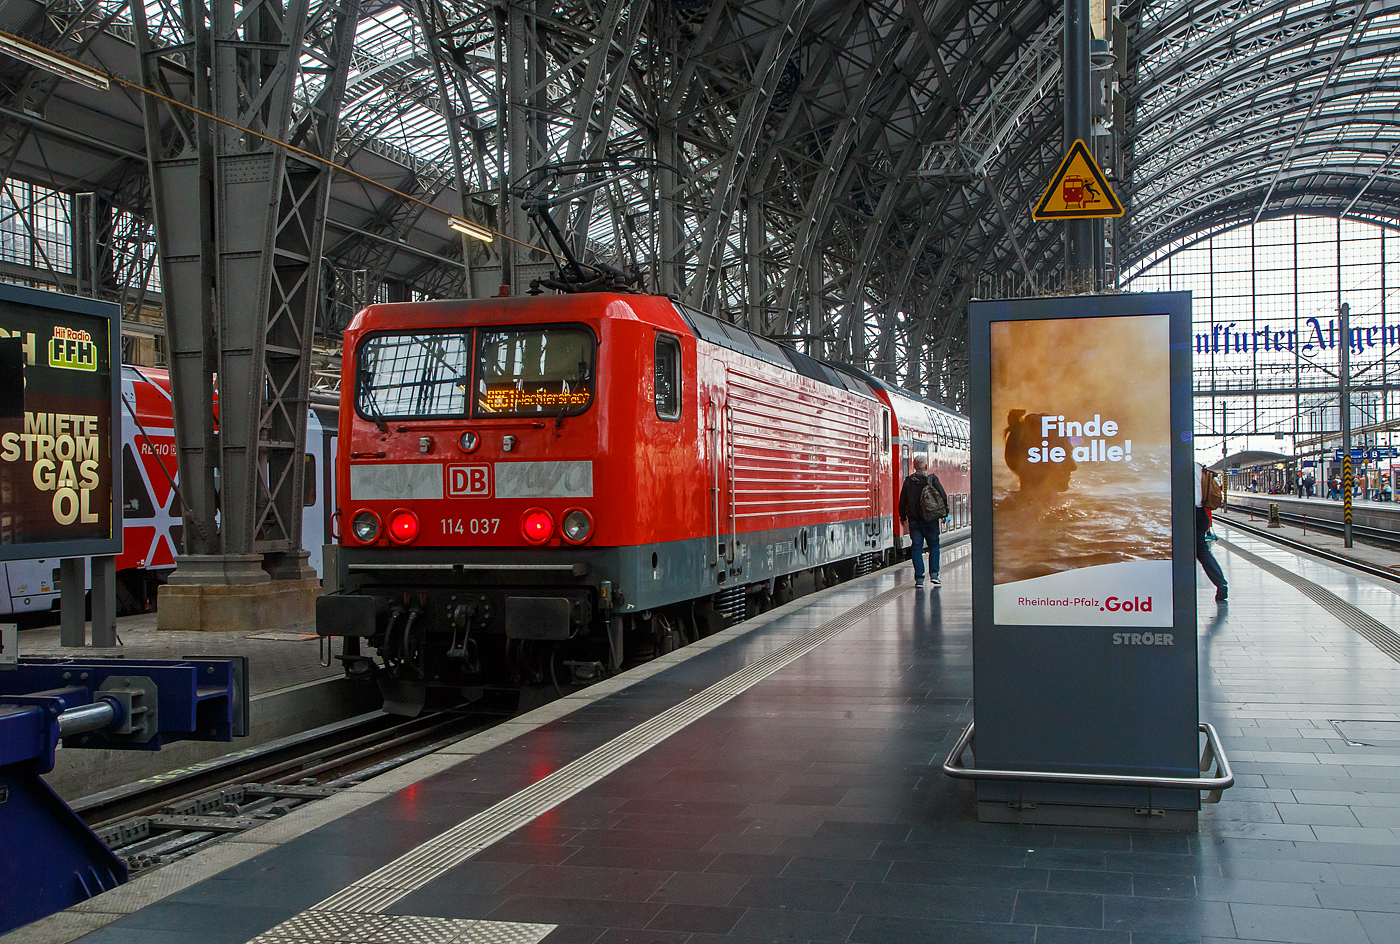 Die 114 037 (91 80 6114 037-5 D-DB), ex DR 112 037-7, der DB Regio steht am 13.09.2022, mit dem RB 51  Kinzigtalbahn  nach Wächtersbach, im Hbf Frankfurt am Main zur Abfahrt bereit.

Die Lok wurde 1991 bei LEW (VEB Lokomotivbau Elektrotechnische Werke „Hans Beimler“, ab 1992 AEG Schienenfahrzeuge Hennigsdorf GmbH) in Hennigsdorf unter der Fabriknummer 21333 gebaut und als DR 112 037-7 an die Deutsche Reichsbahn geliefert, ab 1994 dann DB 112 037-7. Mit dem Übergang zur DB Regio wurde sie dann 2000 in 114 037-5 ungezeichnet.